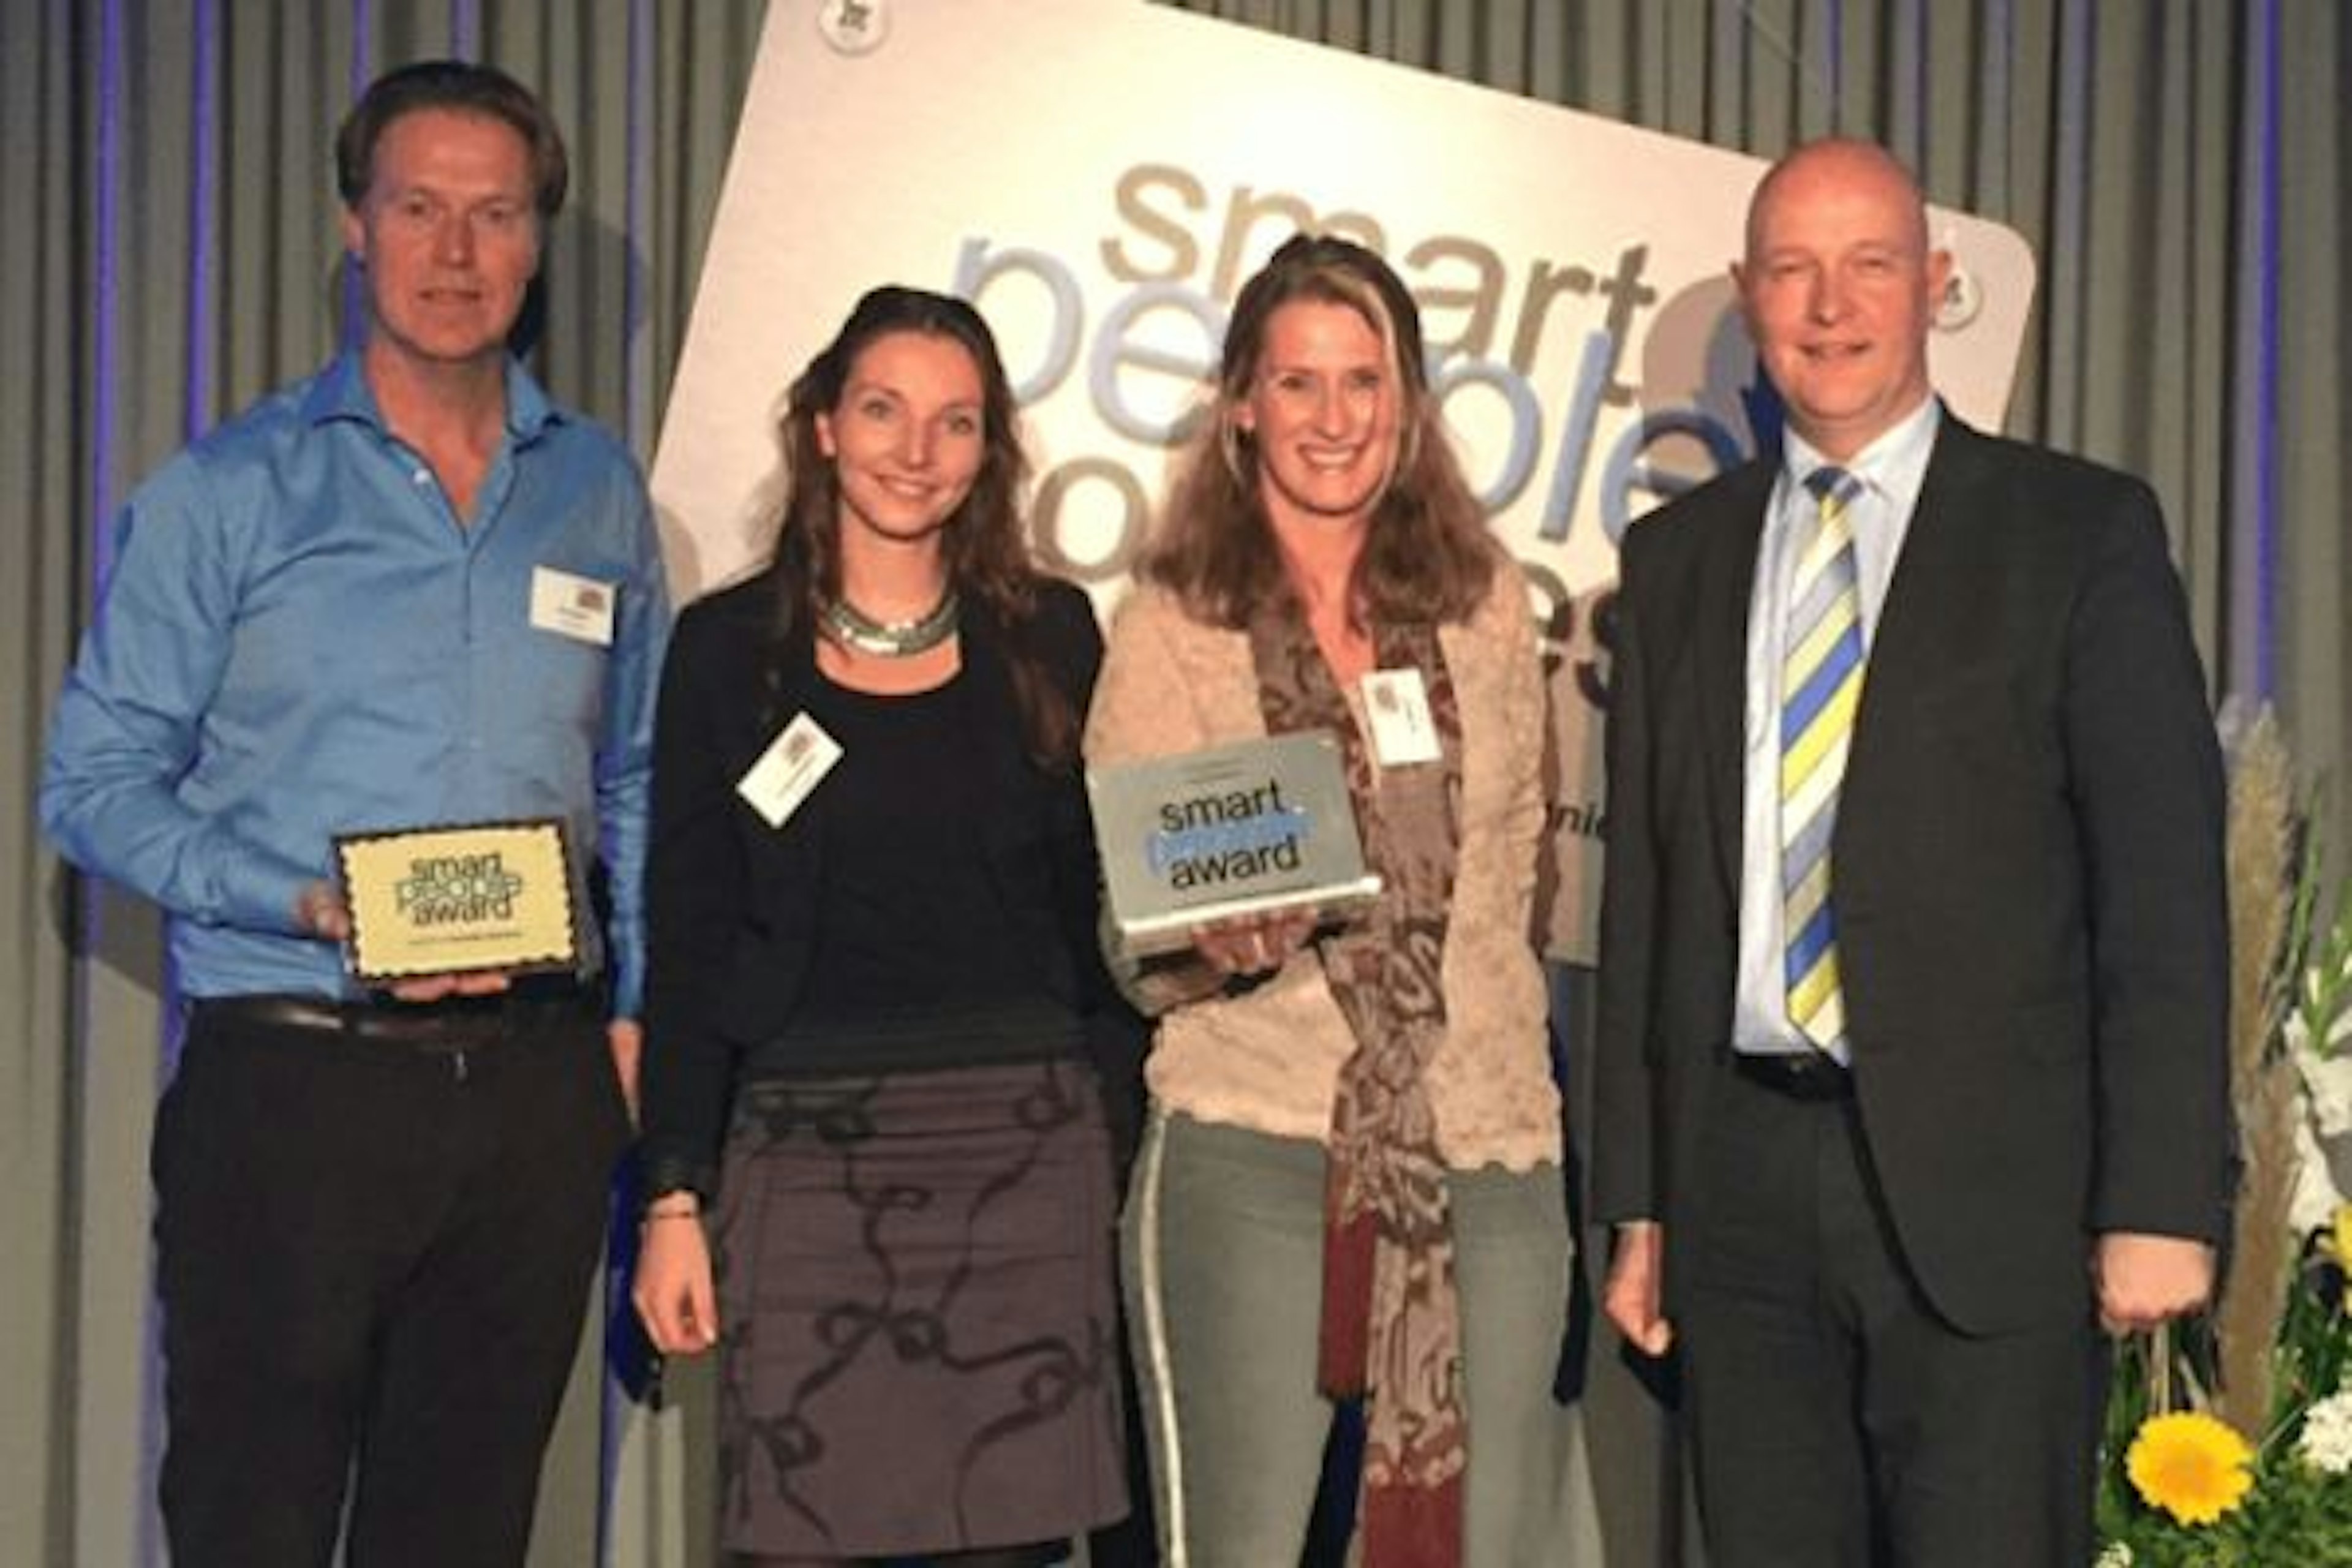 Van Raam winner district Gelre Smart People Award